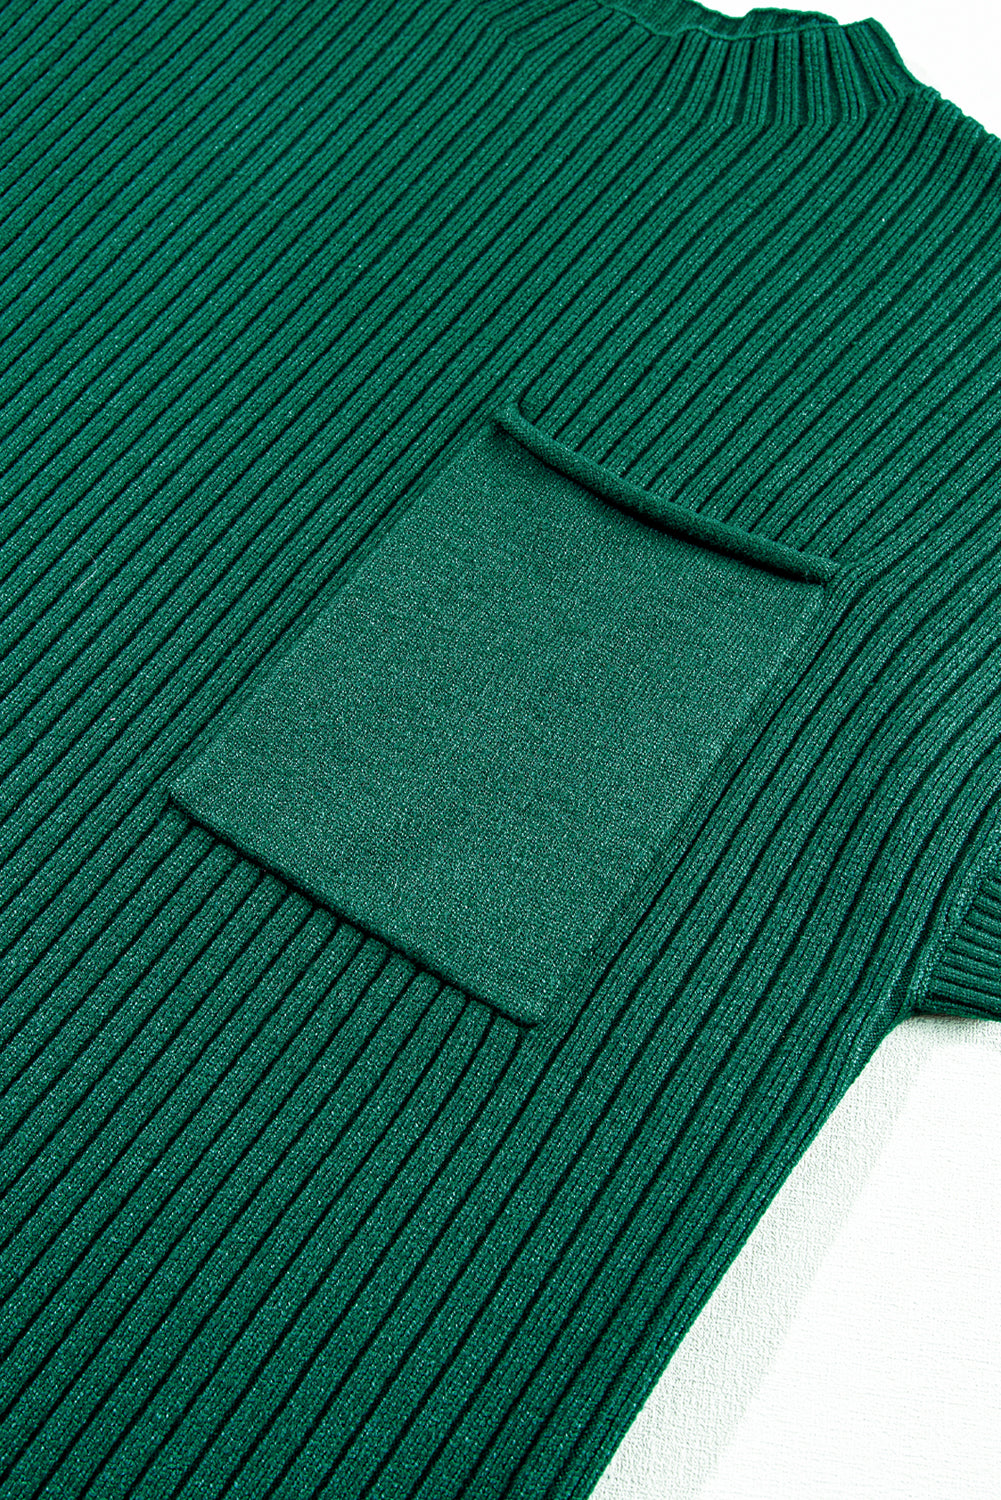 Schwarzgrünes Pulloverkleid aus geripptem Strick mit aufgesetzten Taschen und kurzen Ärmeln